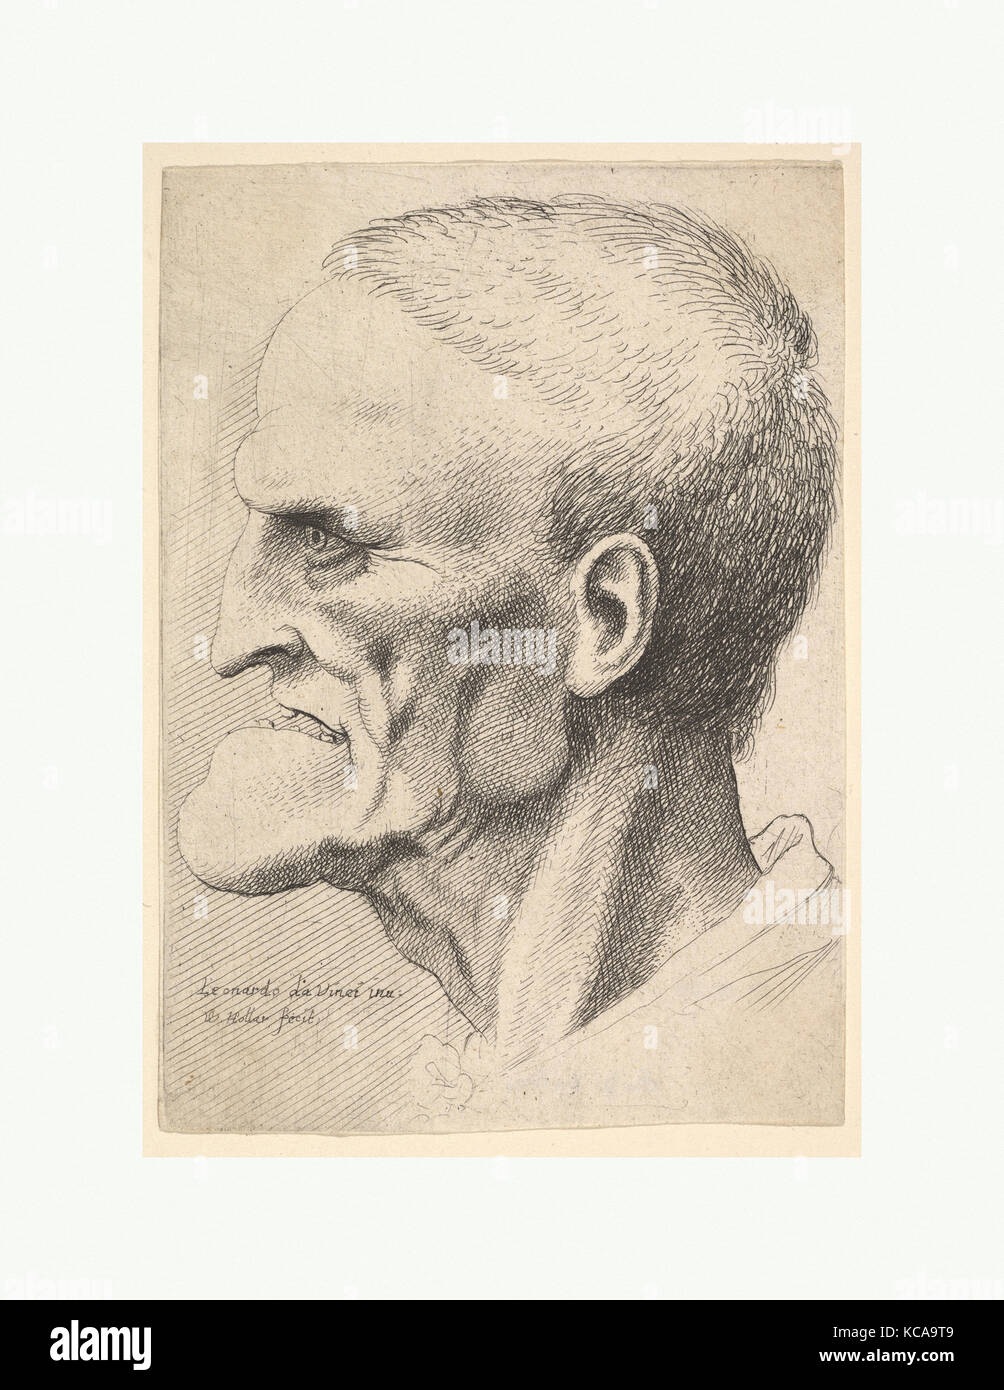 Tête d'un vieil homme avec un menton prononcé, cheveux coupés courts et bouche béante montrant les dents dans le profil à gauche Banque D'Images